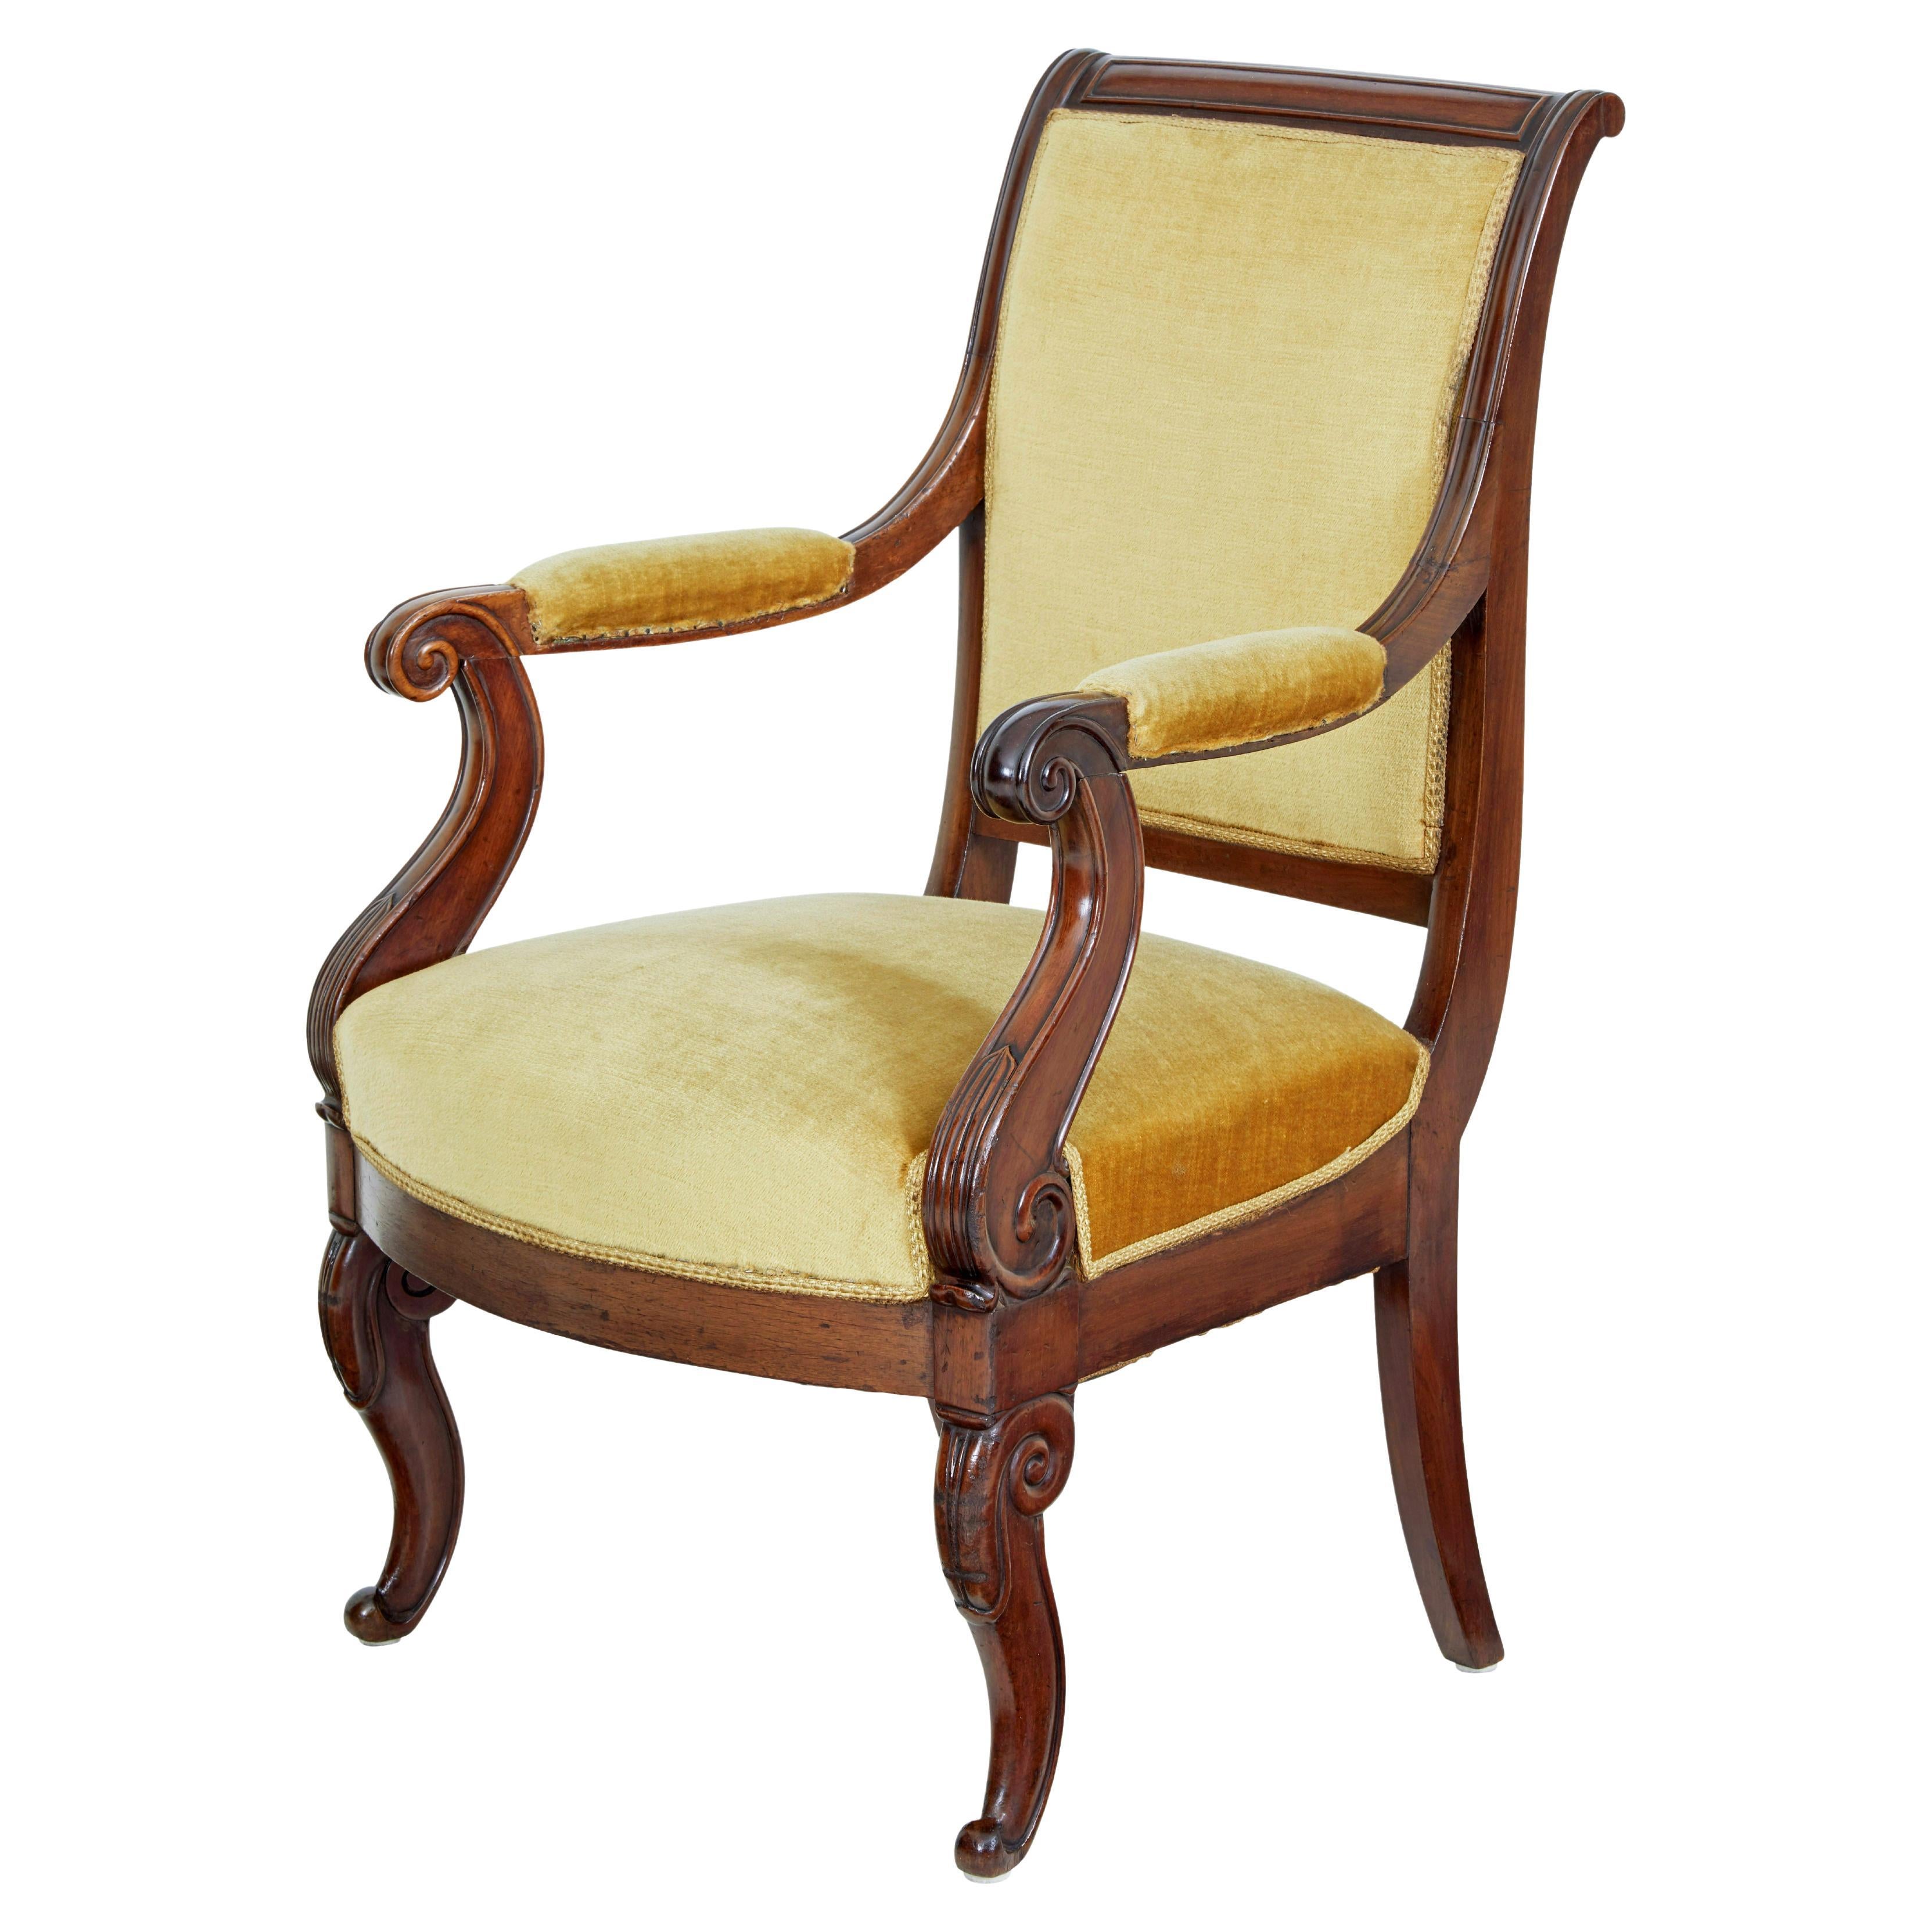 19th century French empire mahogany armchair